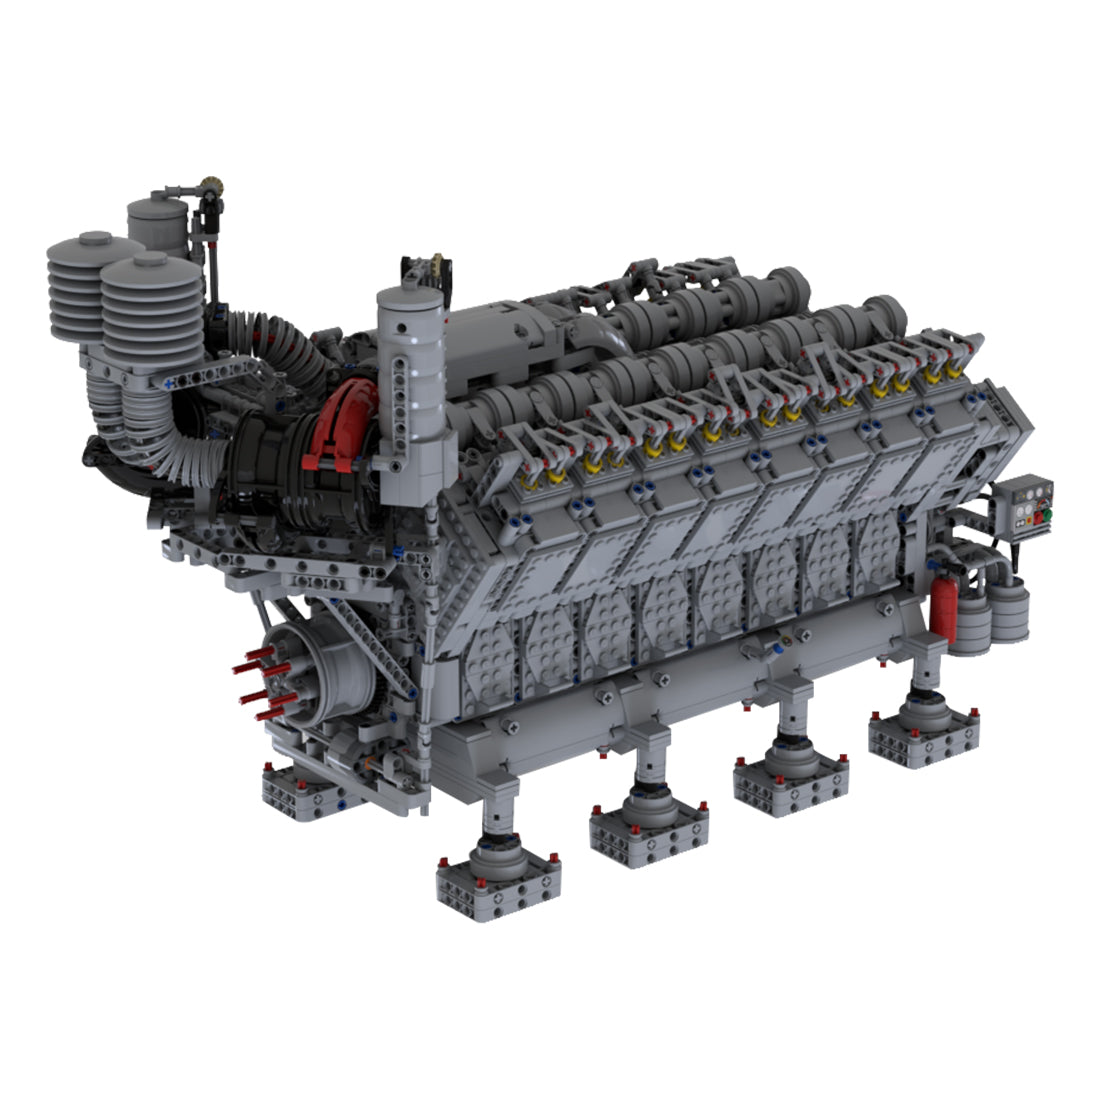 Einführung des MOC-73232 V16-Dieselmotor-Prototypen